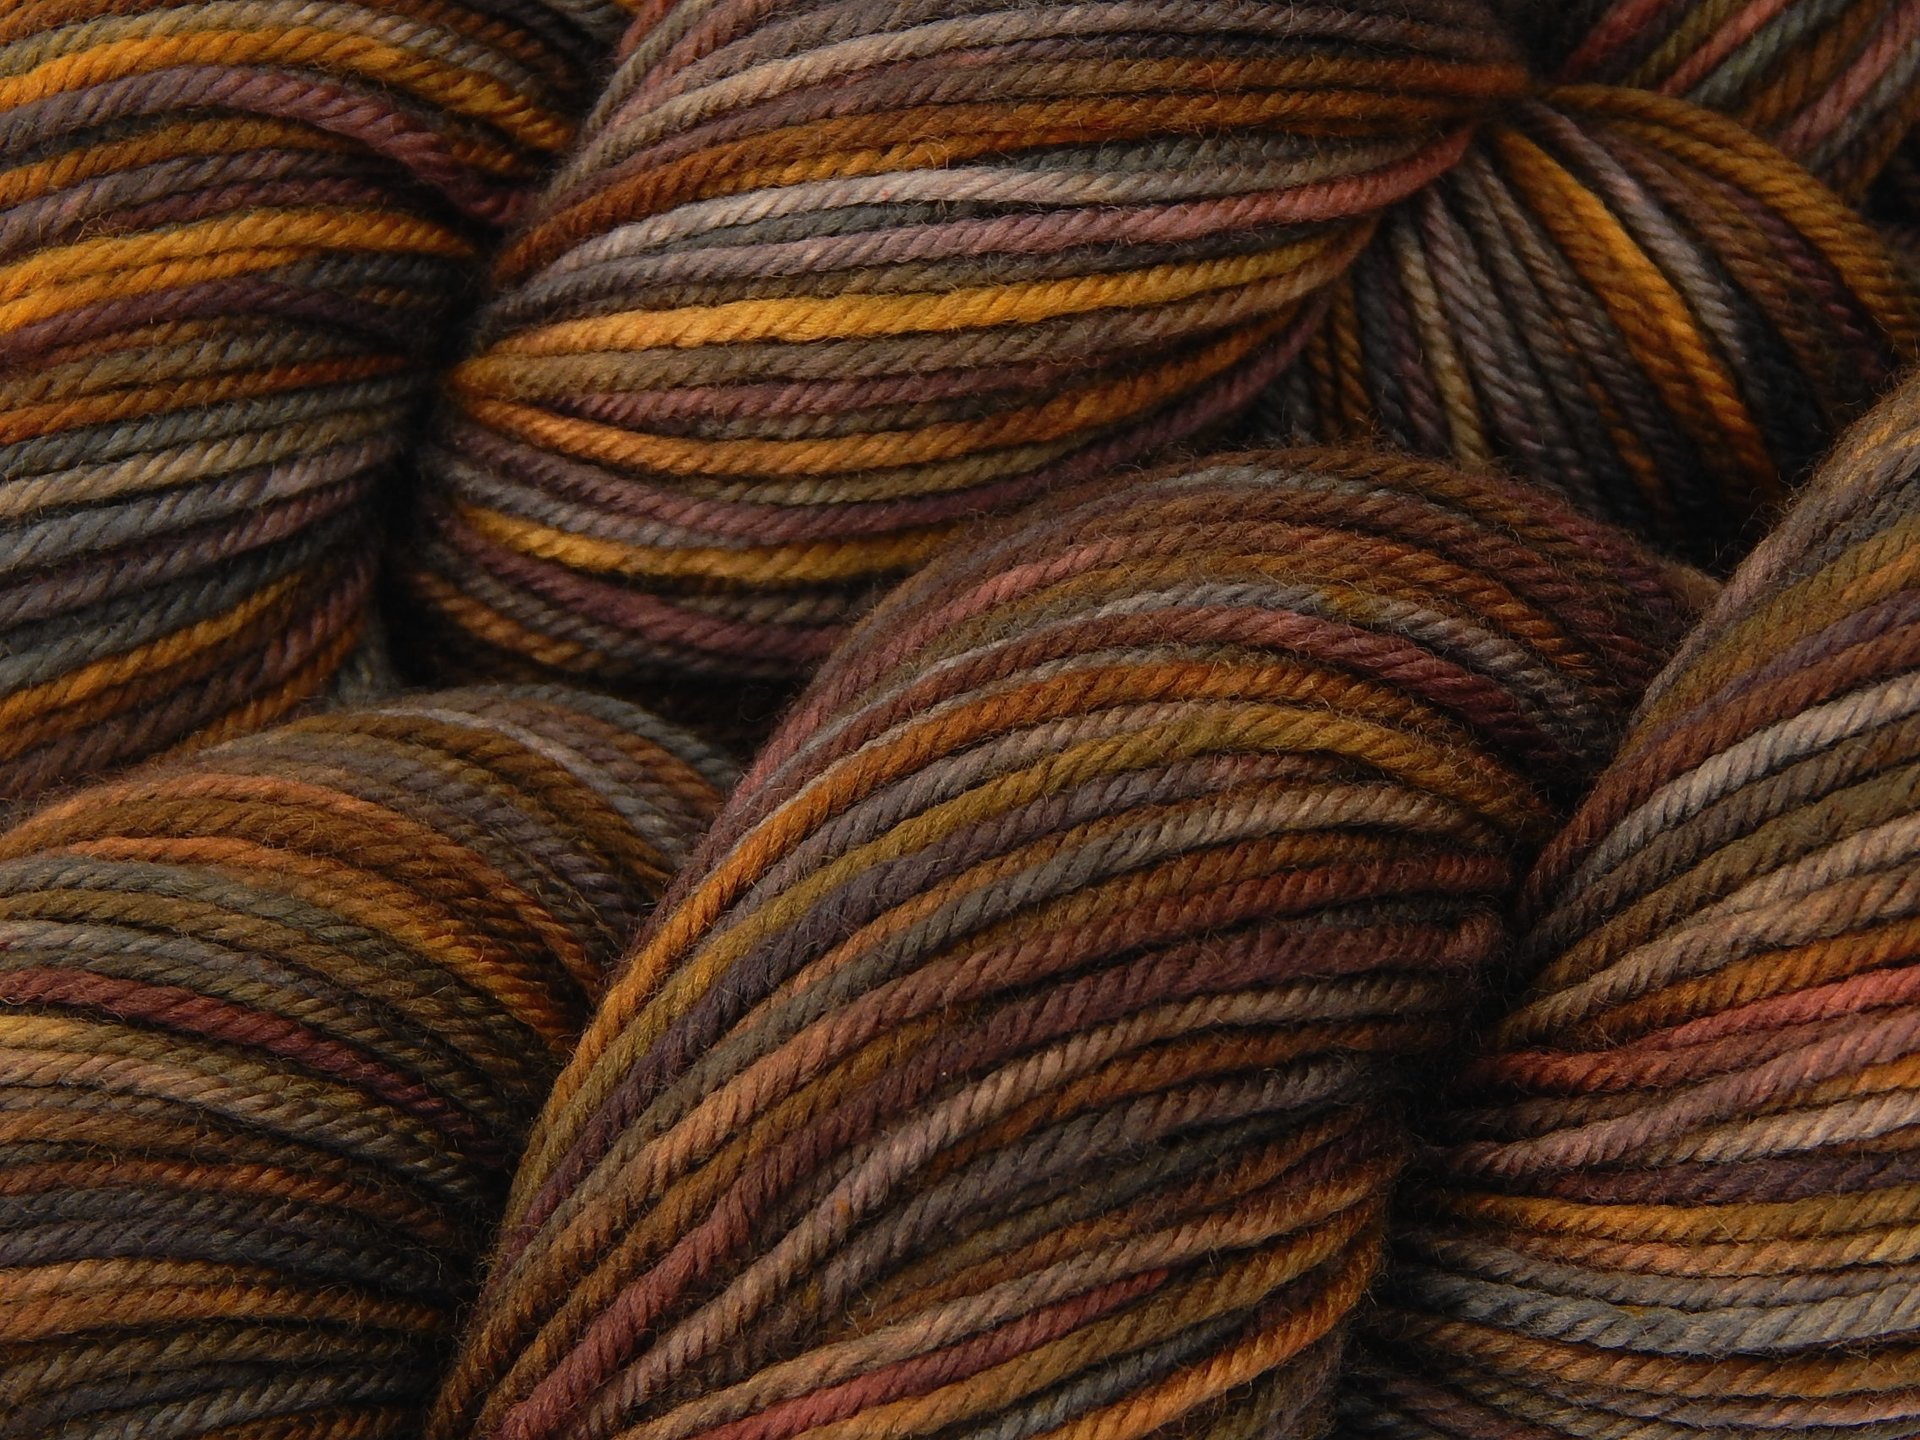 Hand Dyed Yarn, DK Weight Superwash Merino Wool - Agate - Indie Dyer Yarn, Grey Brown Gold Knitting Yarn, Earthy Multicolor Yarn